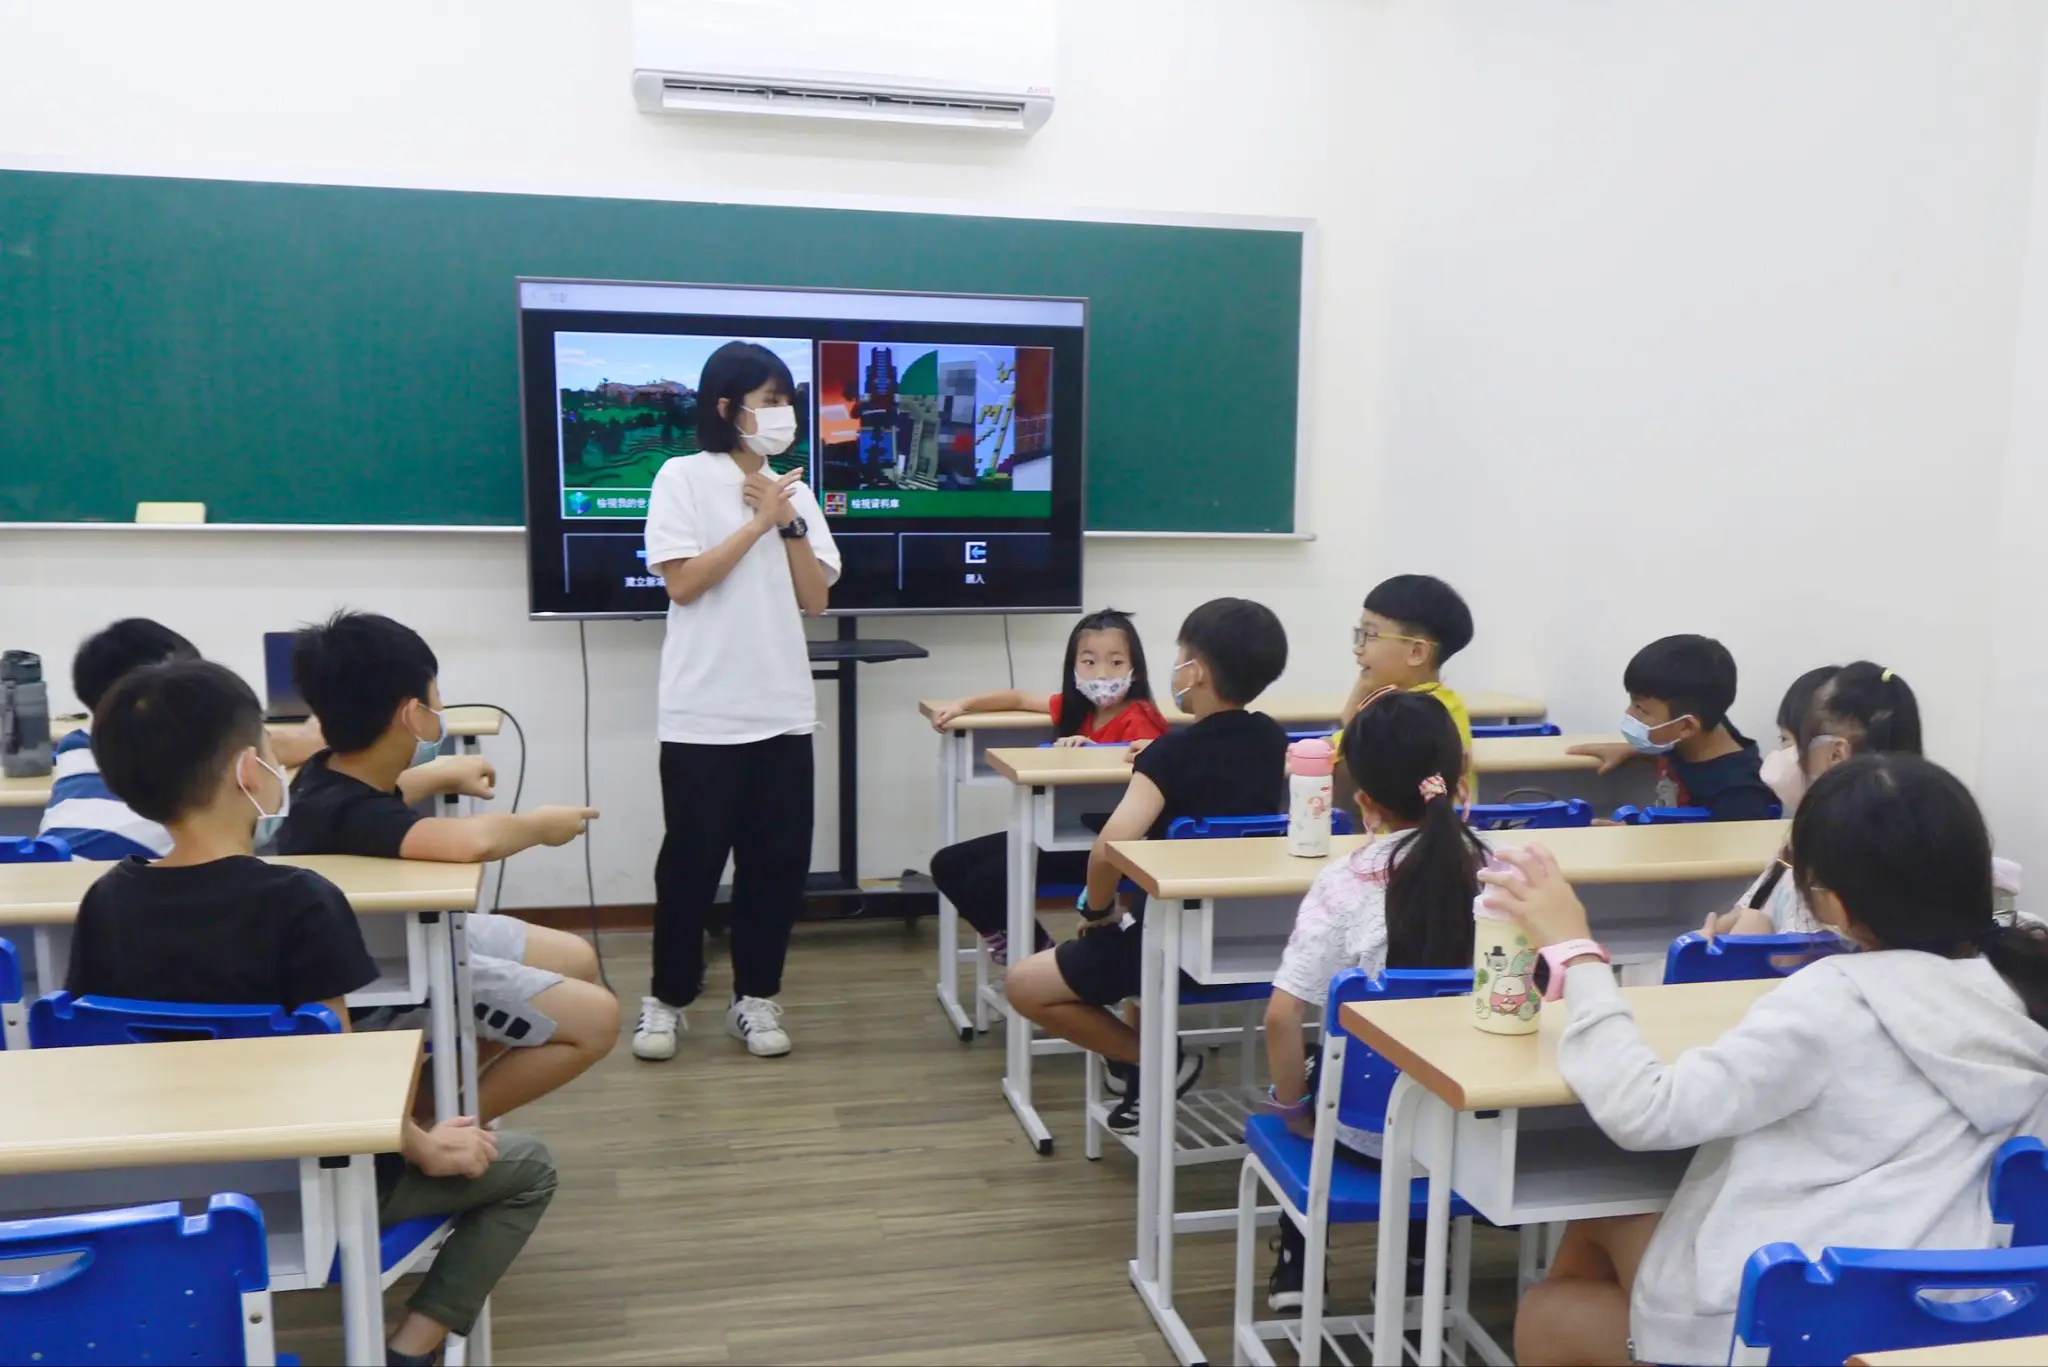 一位穿著白色Polo衫的女老師正在回應台下同學的問題。